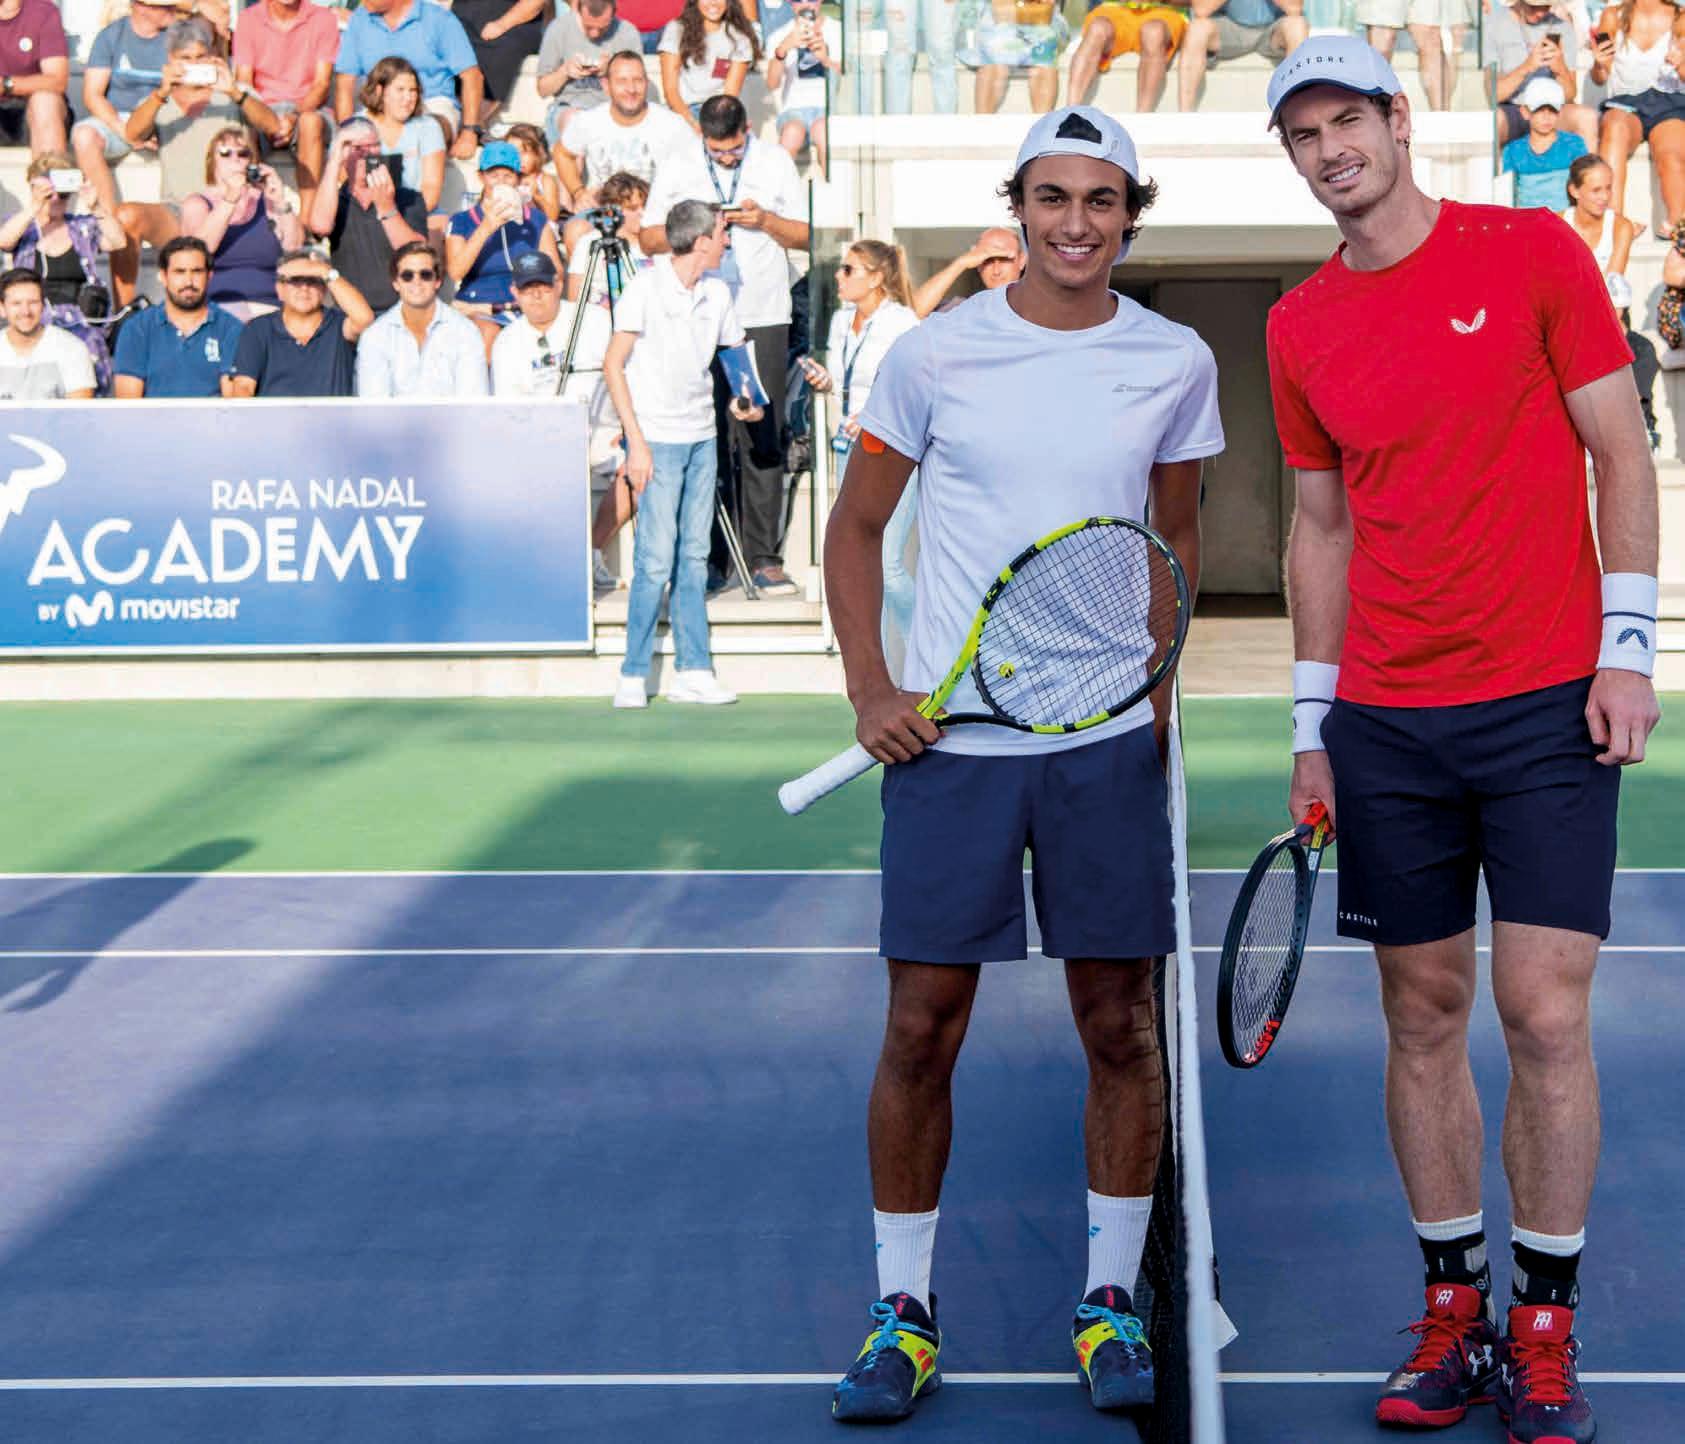 Challenger in der Rafael Nadal Academy: Andy Murray feierte seinen ersten Einzelsieg nach der Hüftoperation im Februar. Imram Sibille hatte beim 0:6, 1:6 keine Chance. Foto: Nadal Academy.